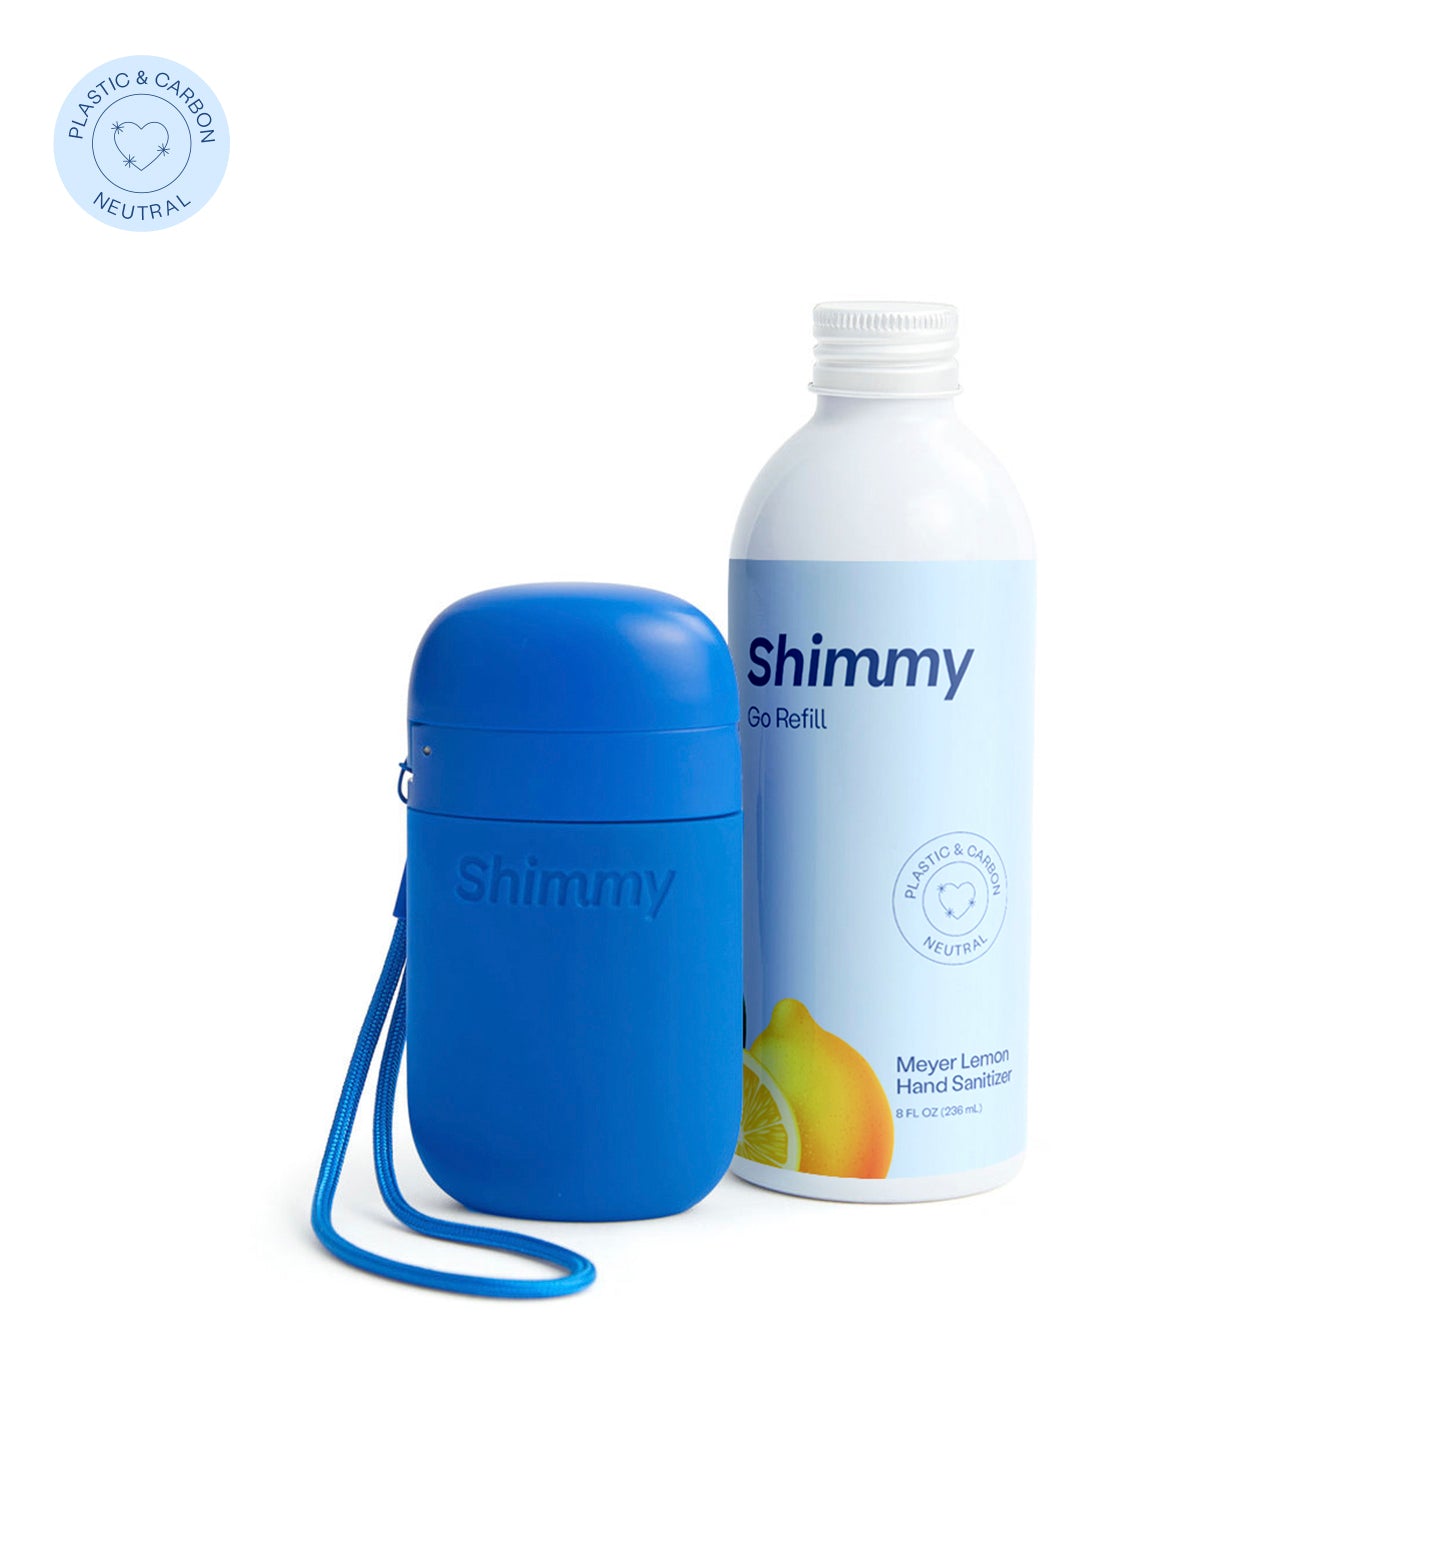 Shimmy Go Portable Hand Sanitizer Dispenser Navy Blue + Meyer Lemon Hand Sanitizer [40734763221183] - 40734763221183